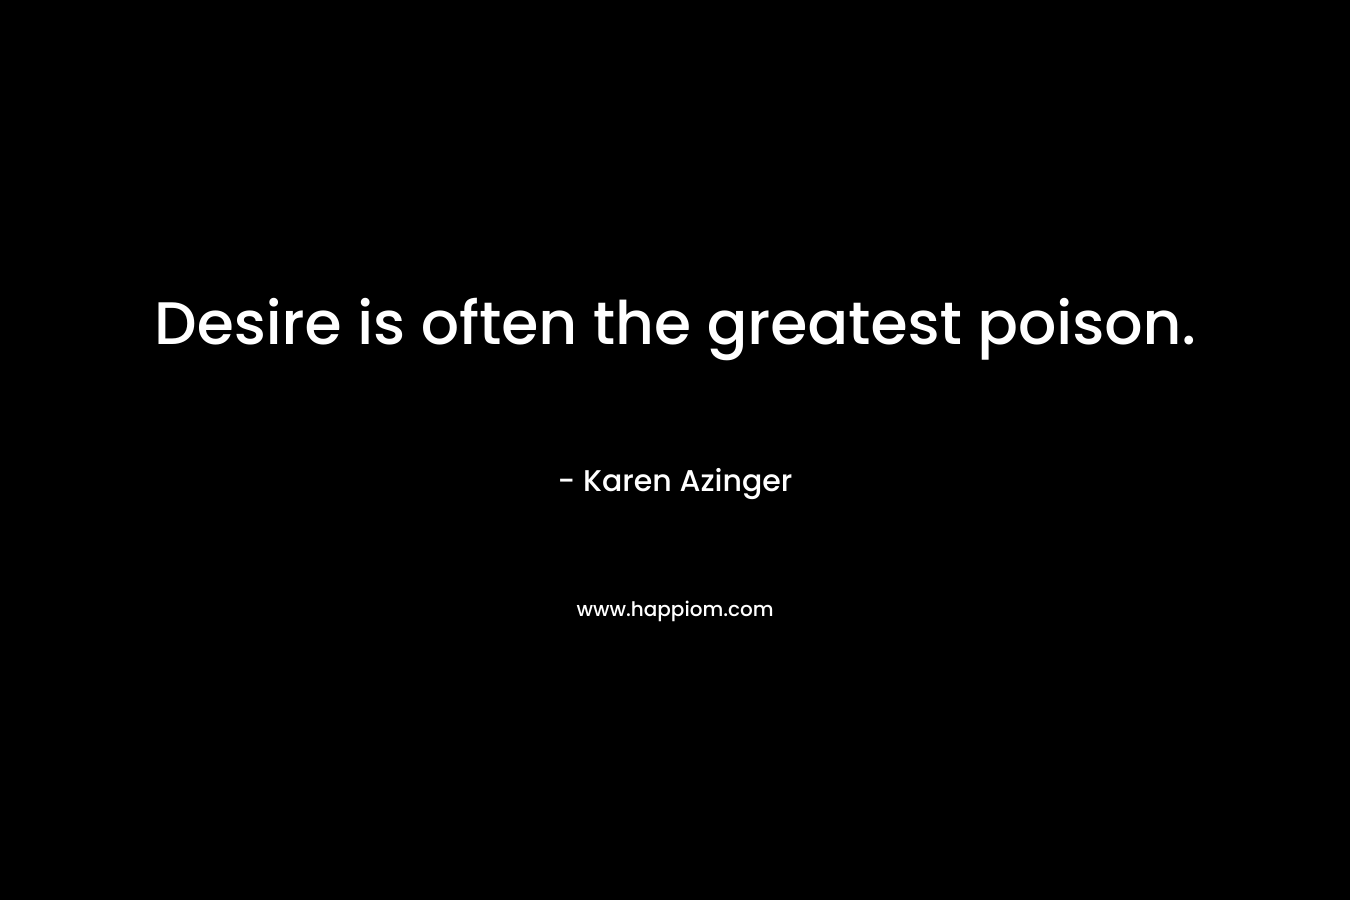 Desire is often the greatest poison.